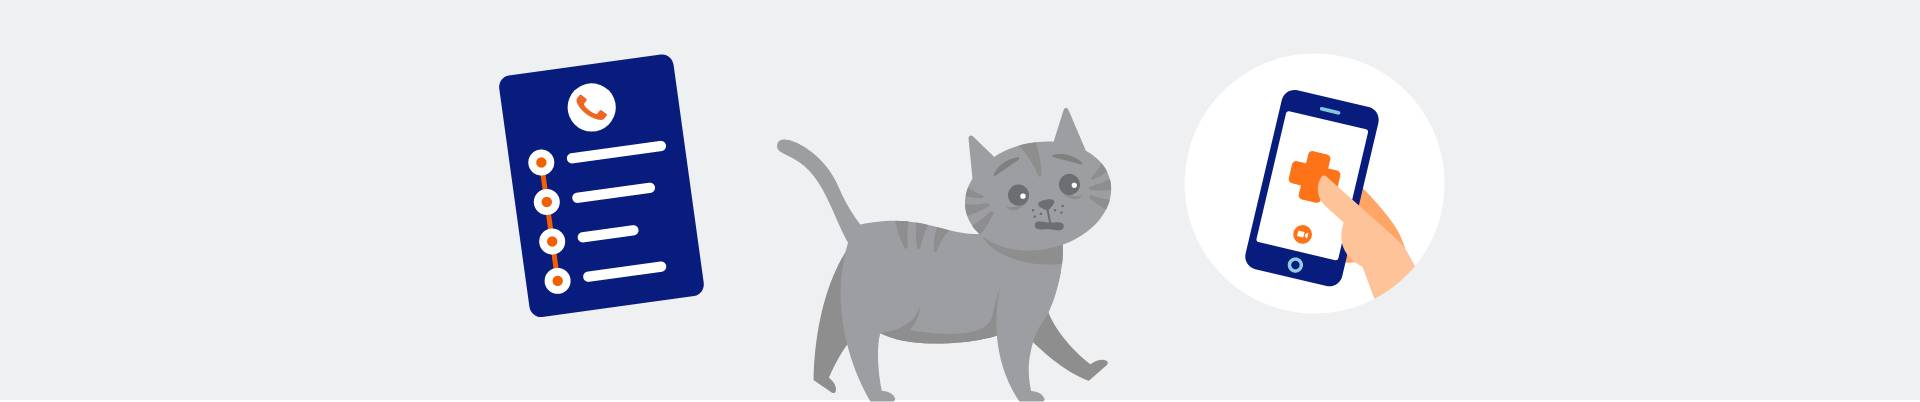 Ilustración de un gato, una lista de verificación y un teléfono